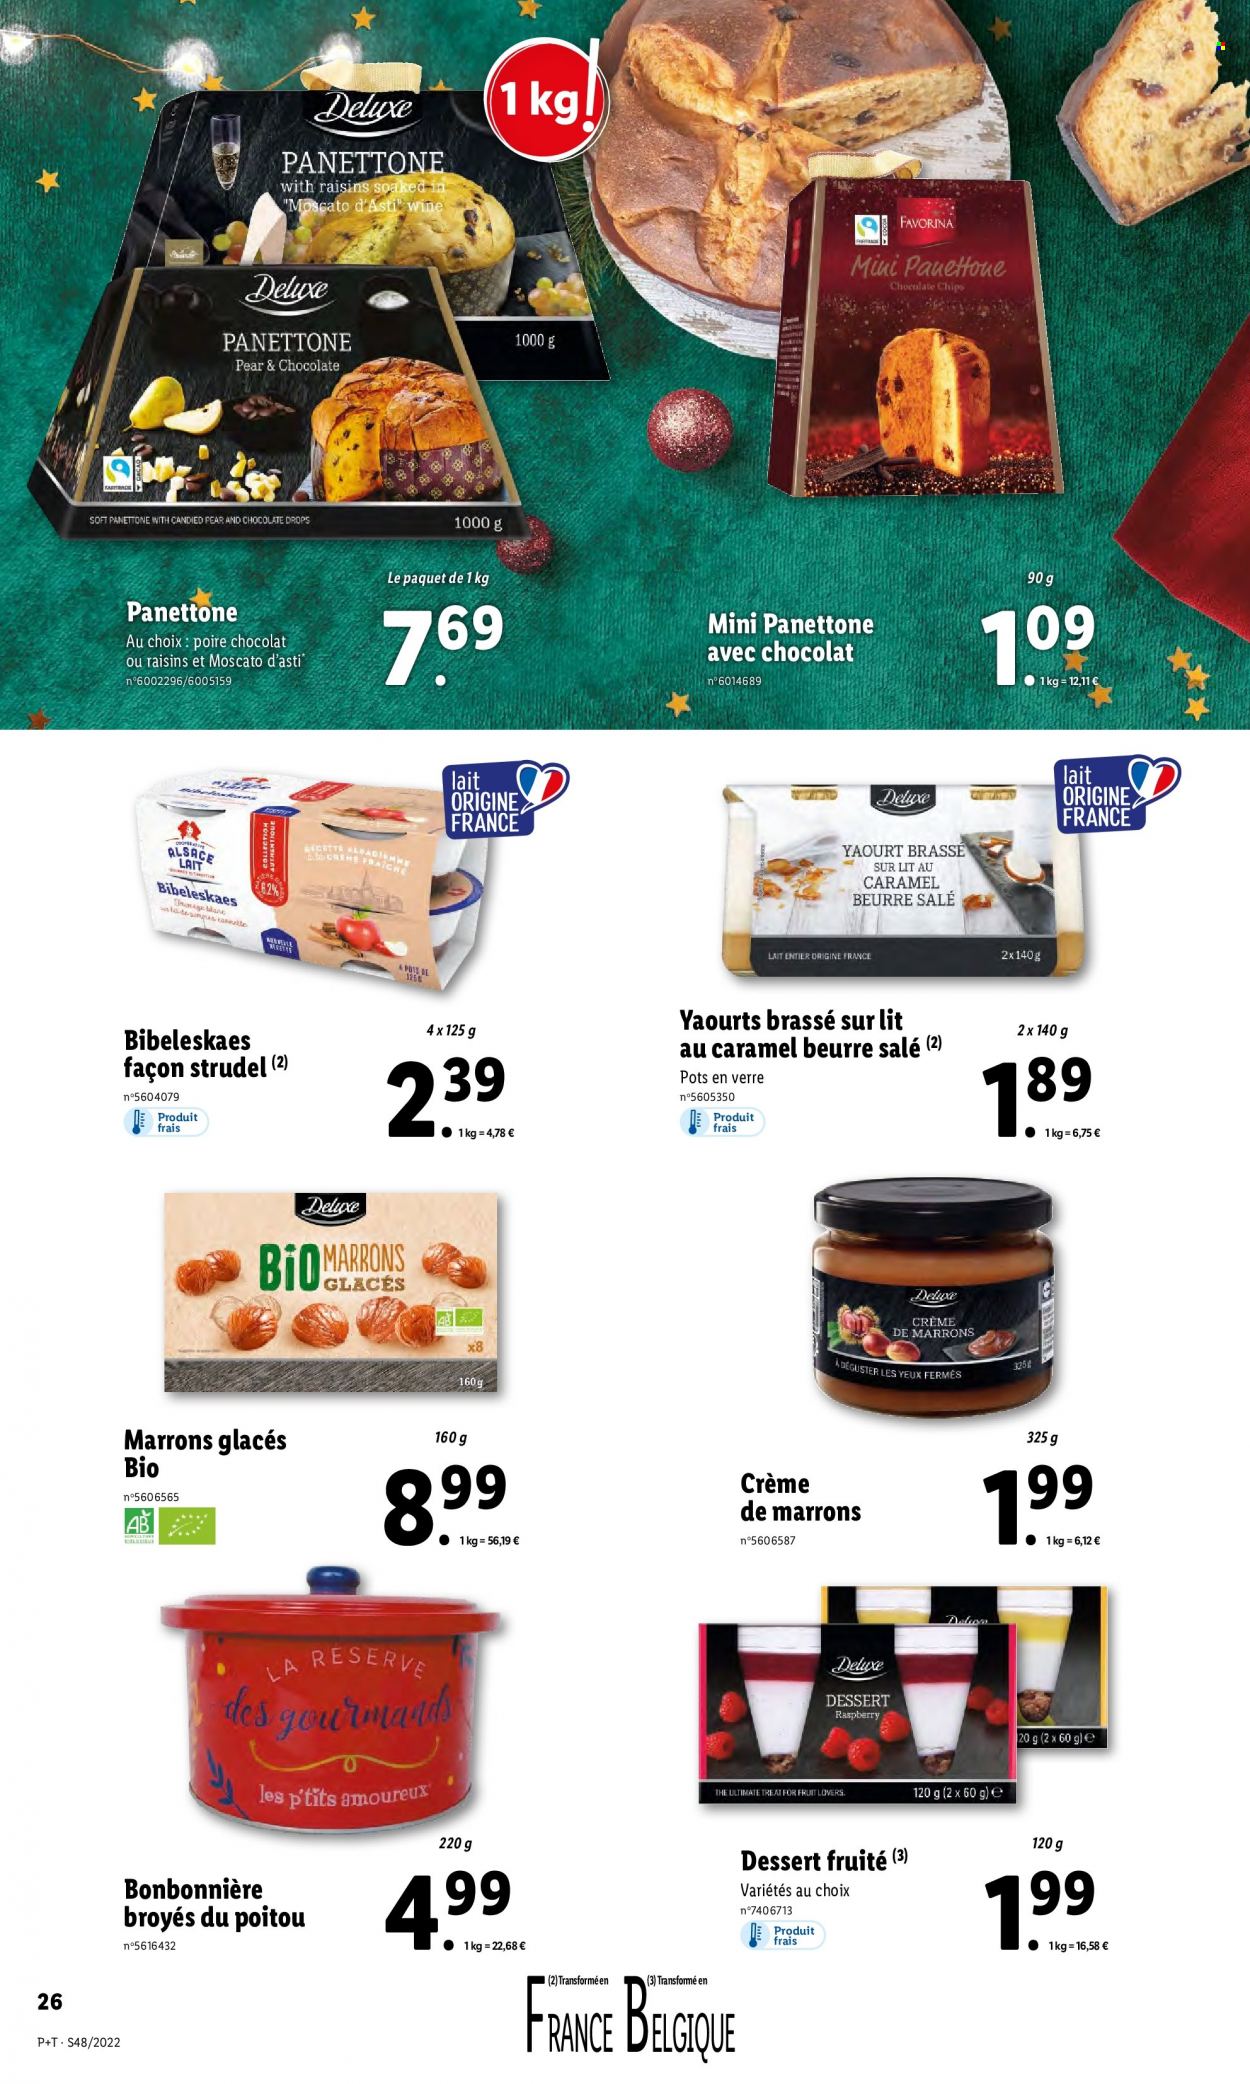 thumbnail - Catalogue Lidl - 30/11/2022 - 06/12/2022 - Produits soldés - dessert, panettone, fromage, yaourt, crème fraîche, bonbonnière, marrons glacés, chips, cannelle. Page 26.